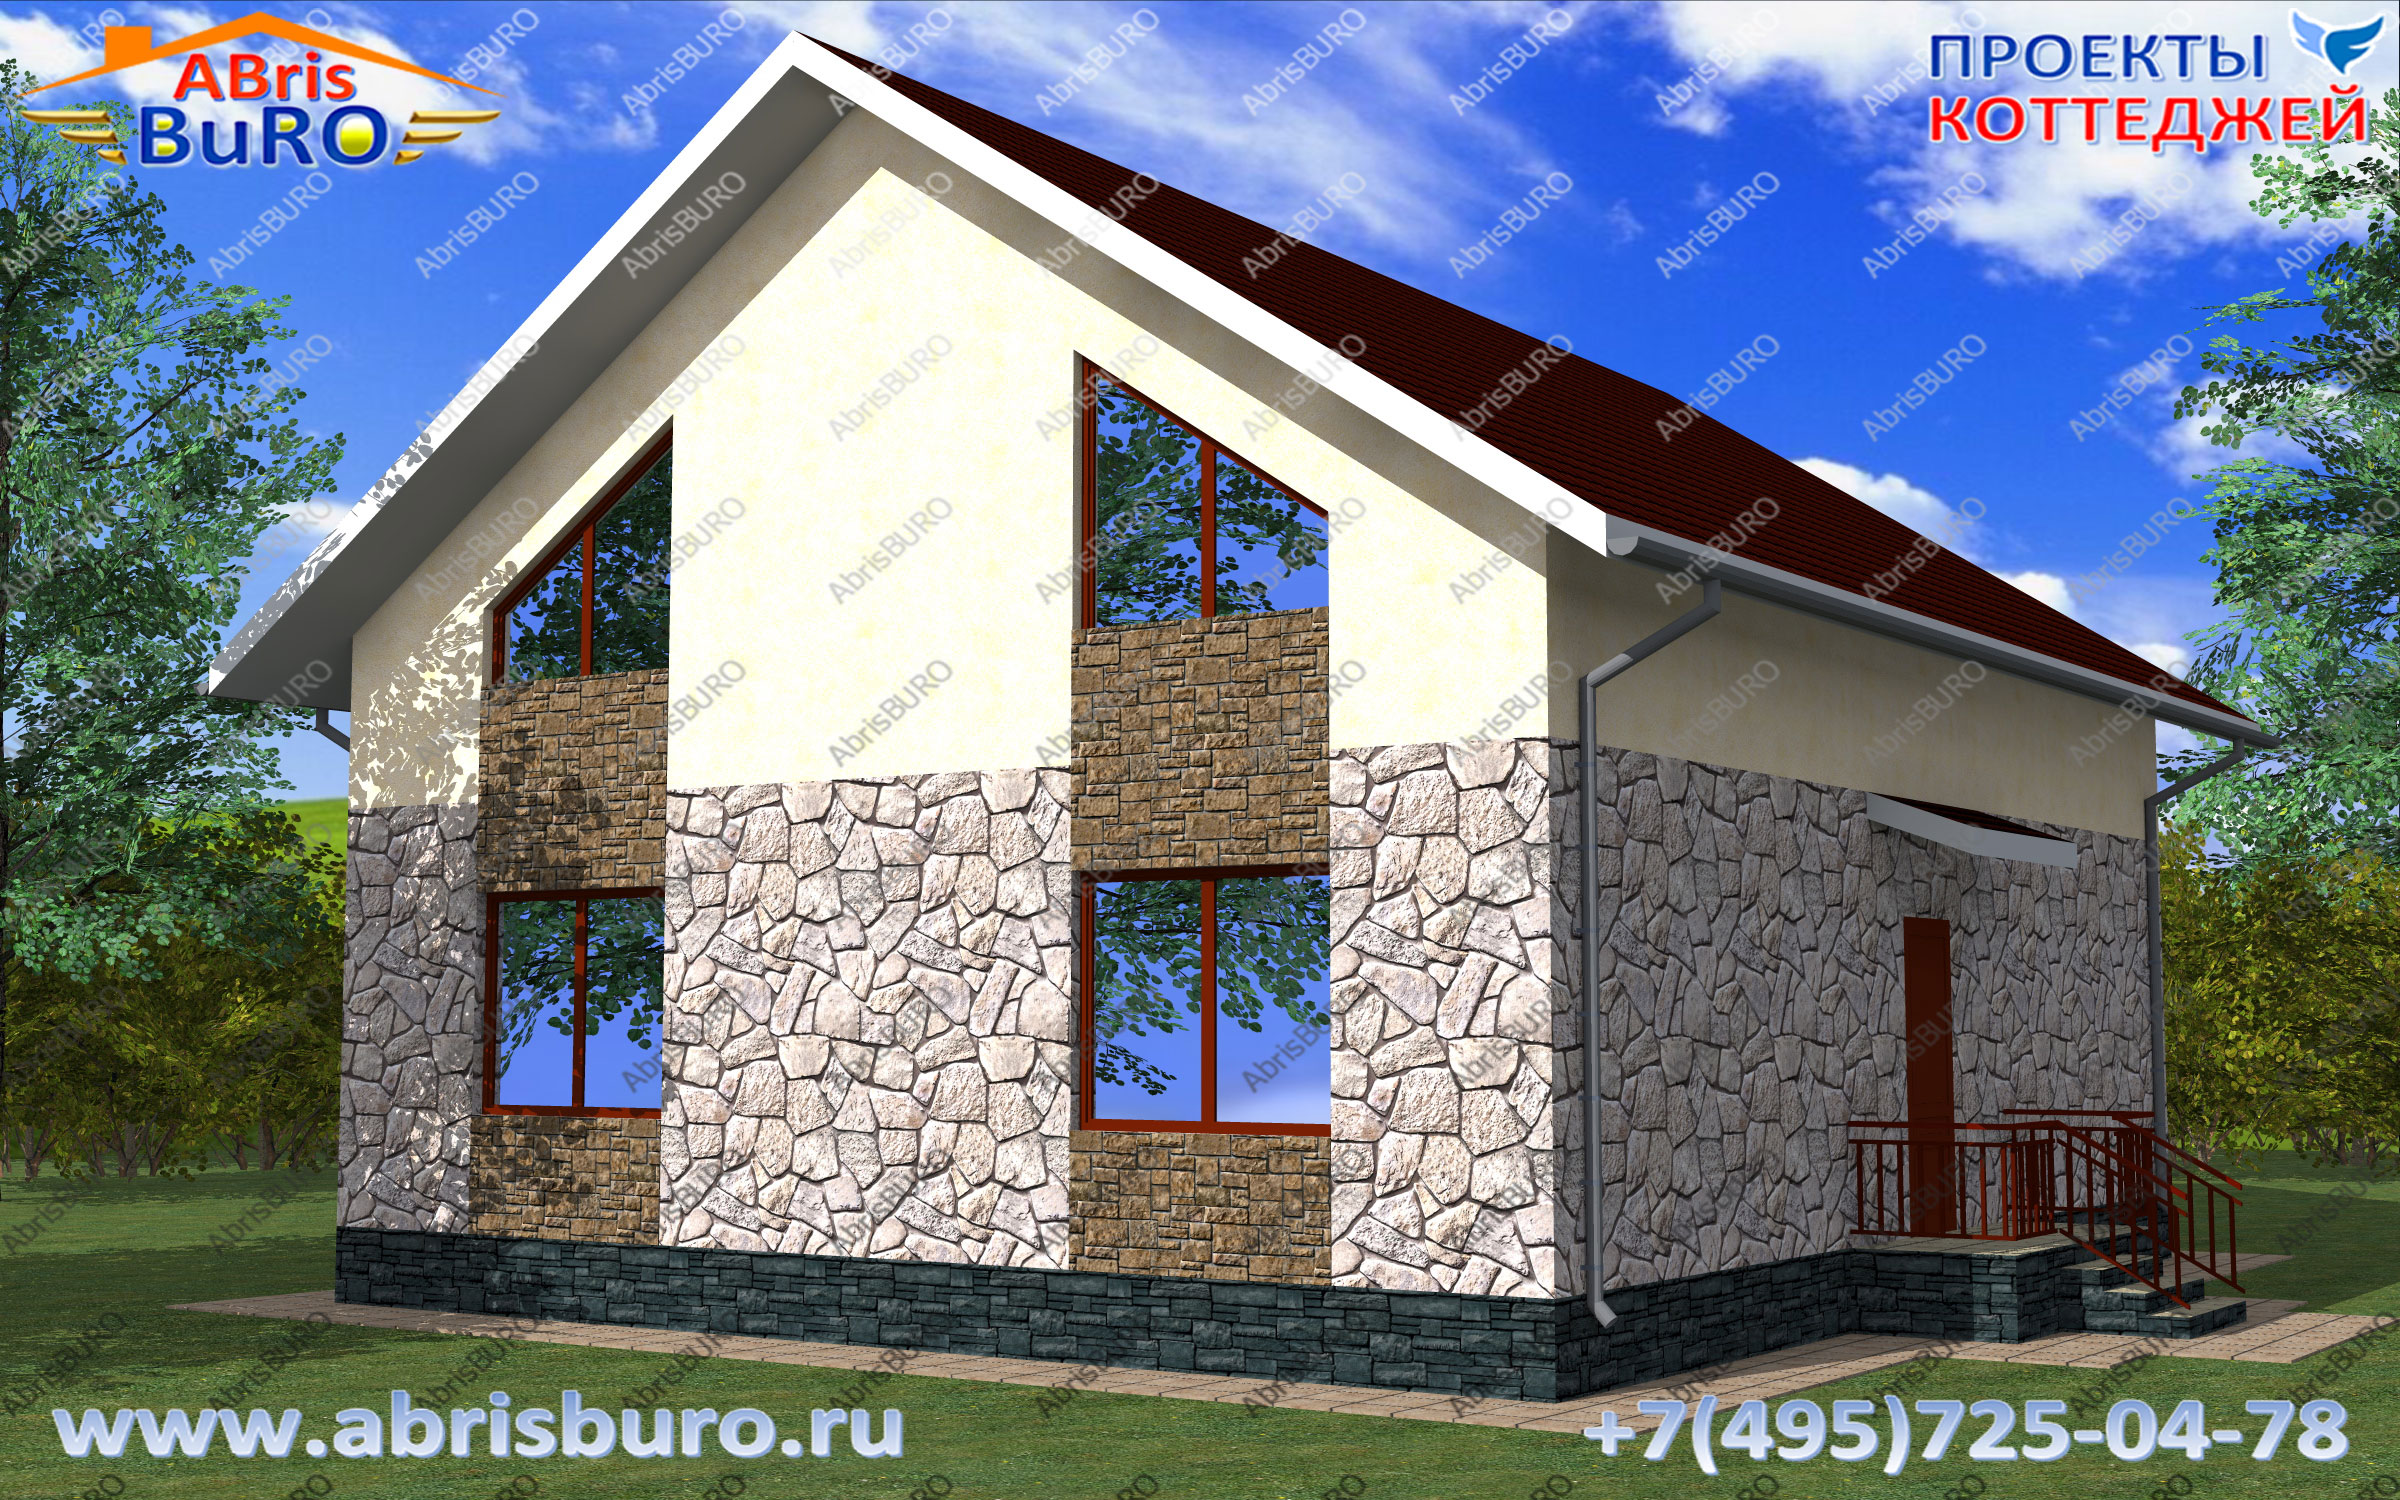 K2132-216 Дом с панорамными окнами на сайте www.abrisburo.ru